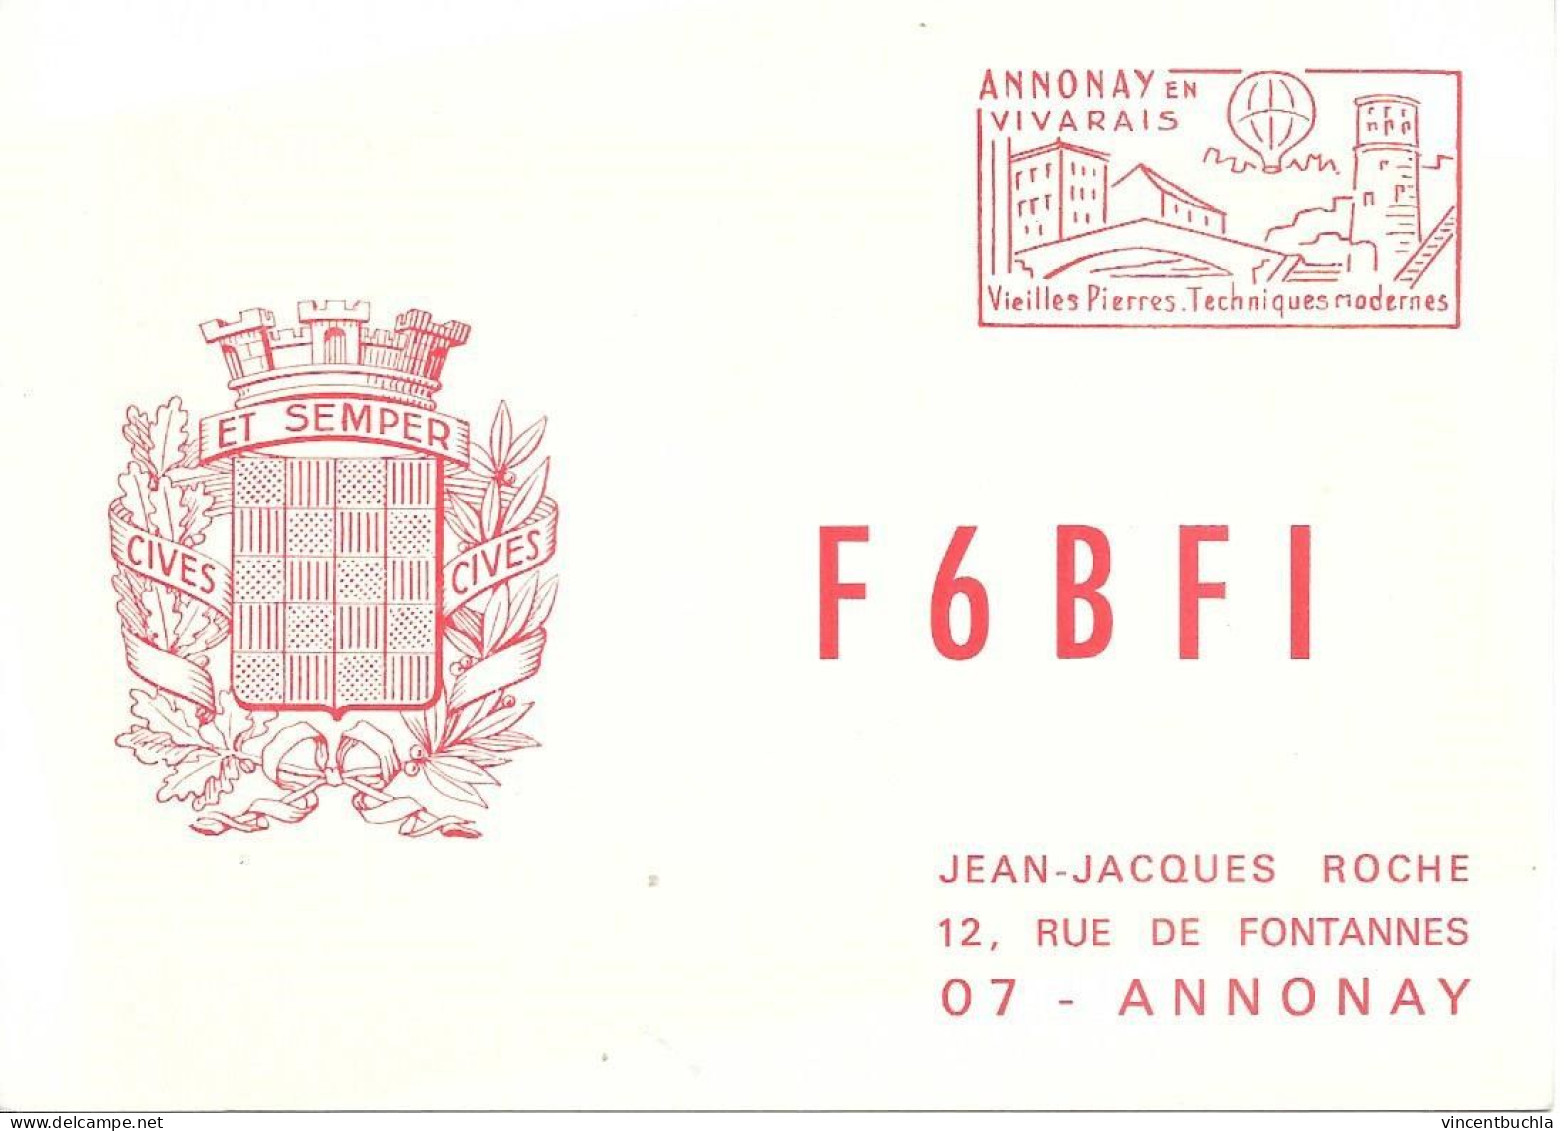 Carte QSL F6 BFI Annonay En Vivarais 22 Juillet 1973 Jean Jacques Roche Flamme Annonay France - Radio Amateur